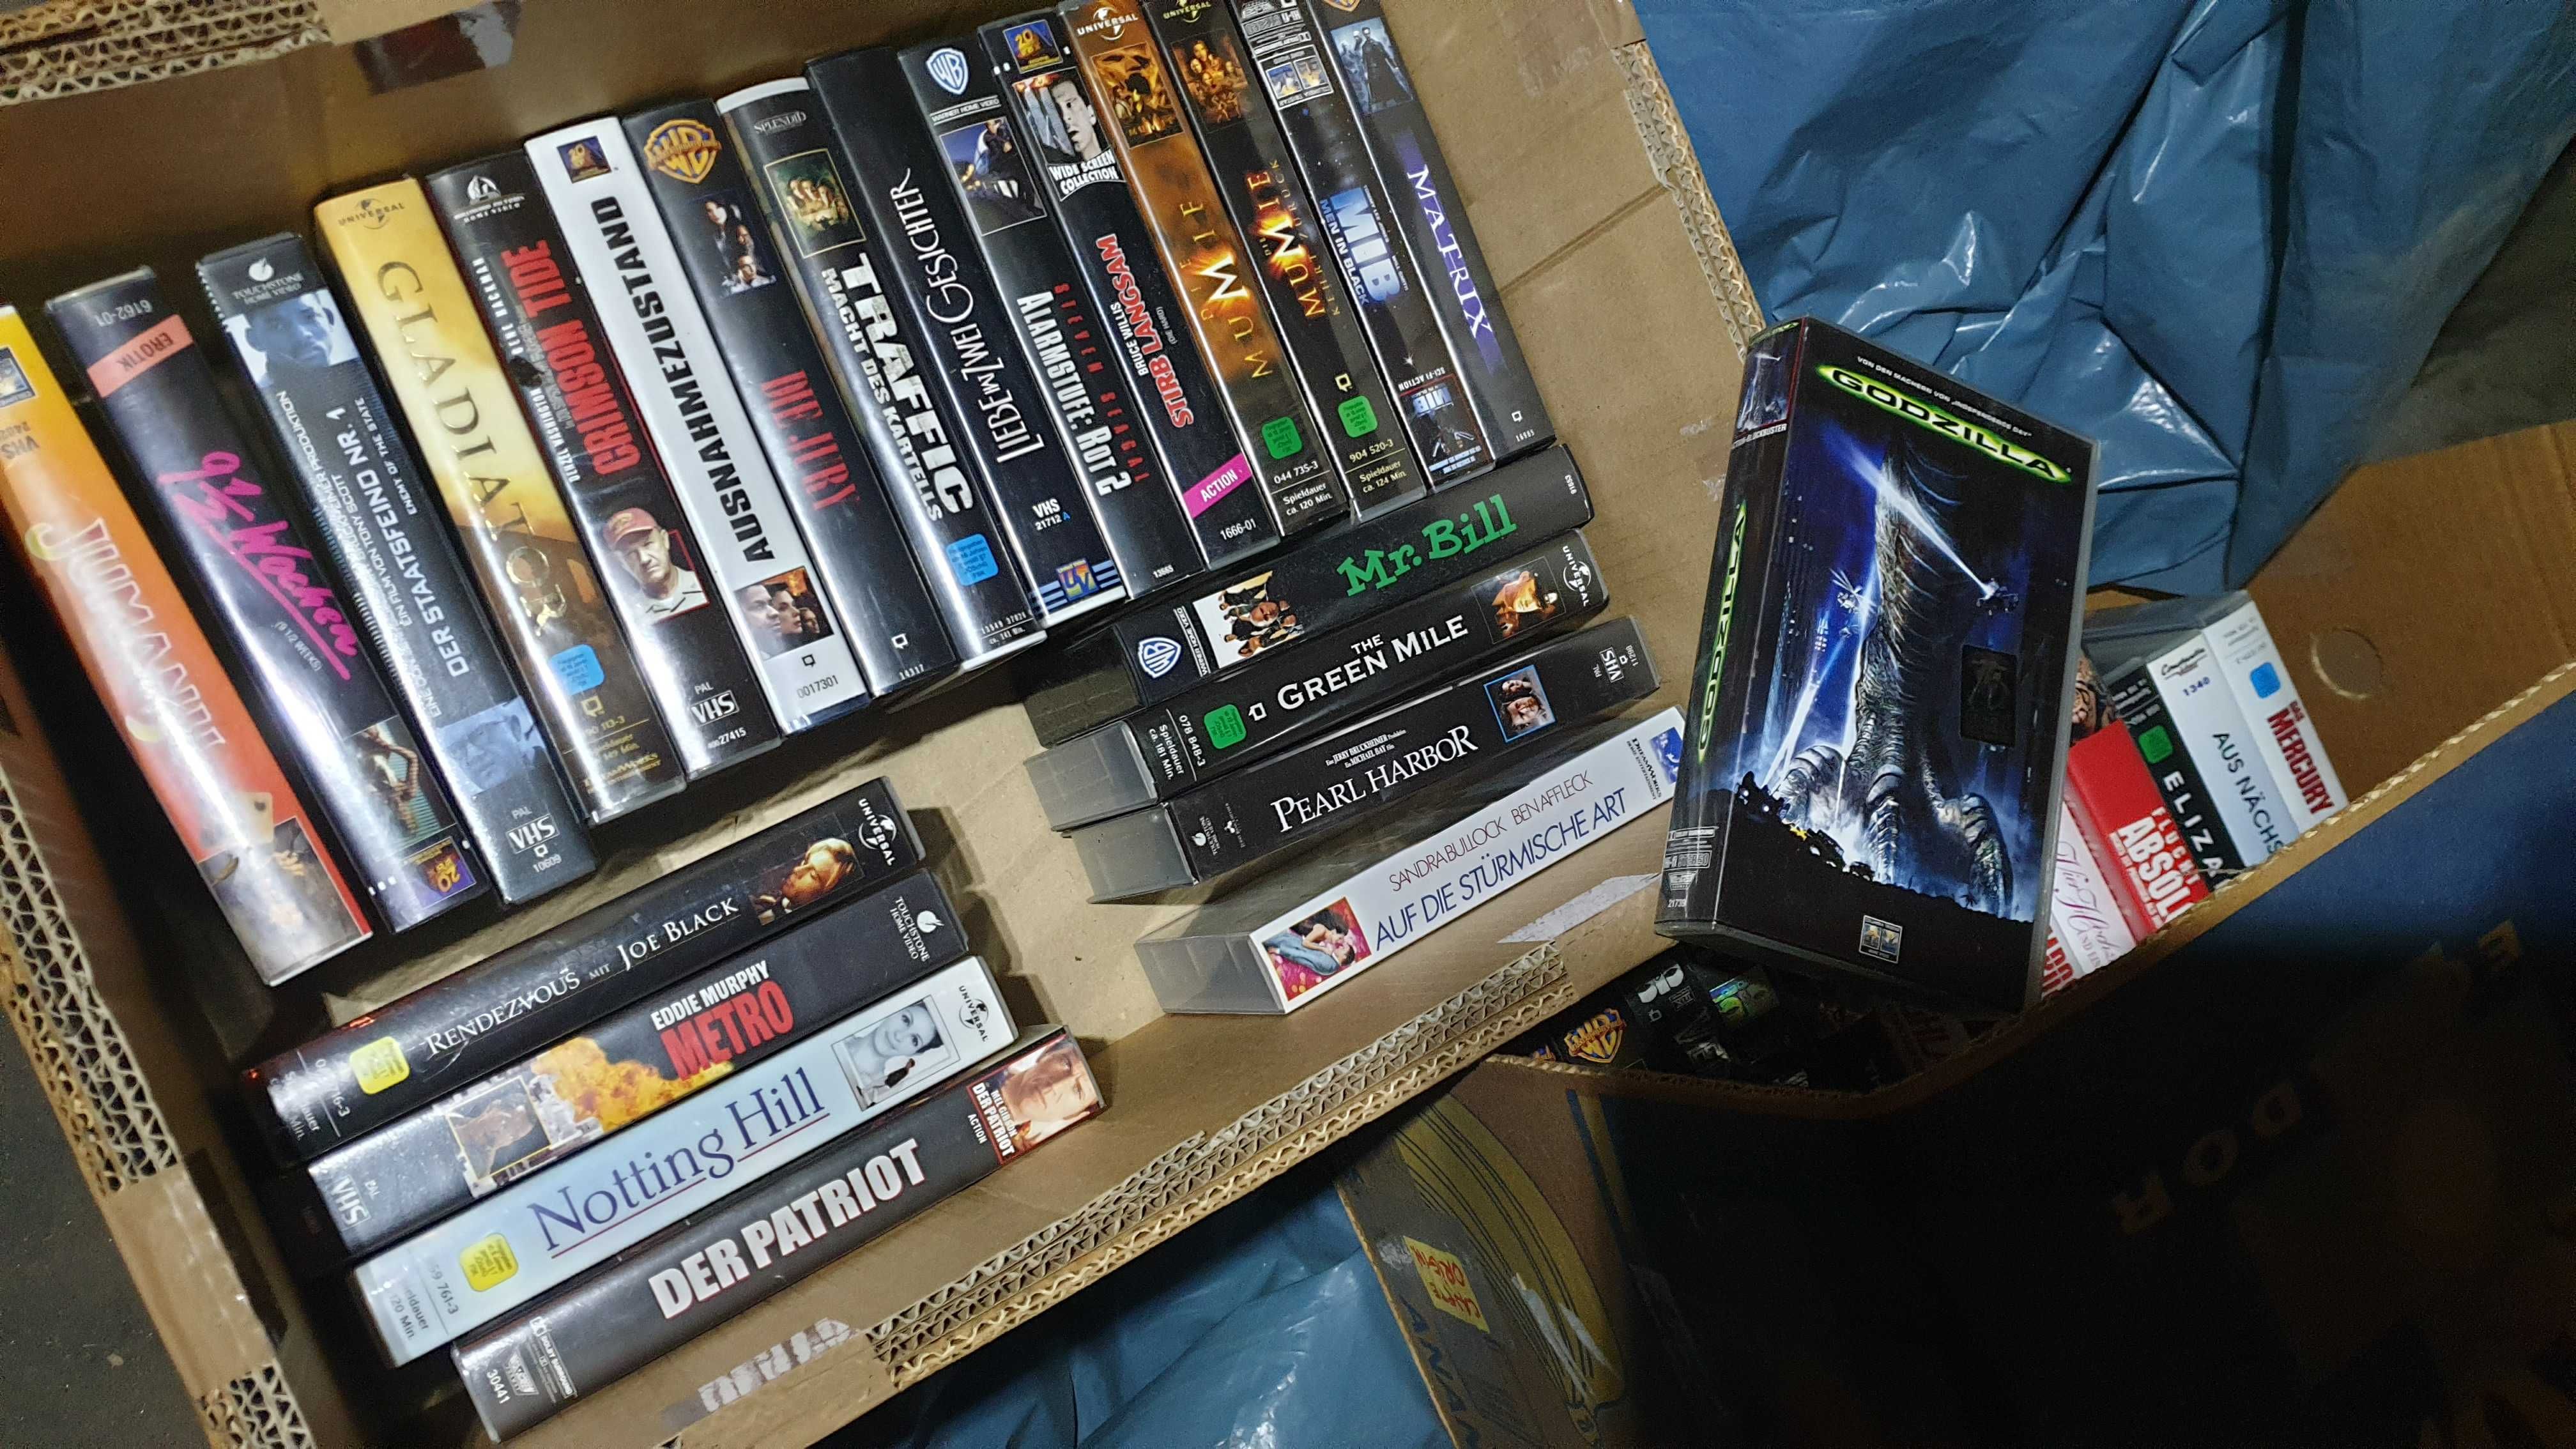 filme originale casete VHS, limba germana. Livrare gratuita !